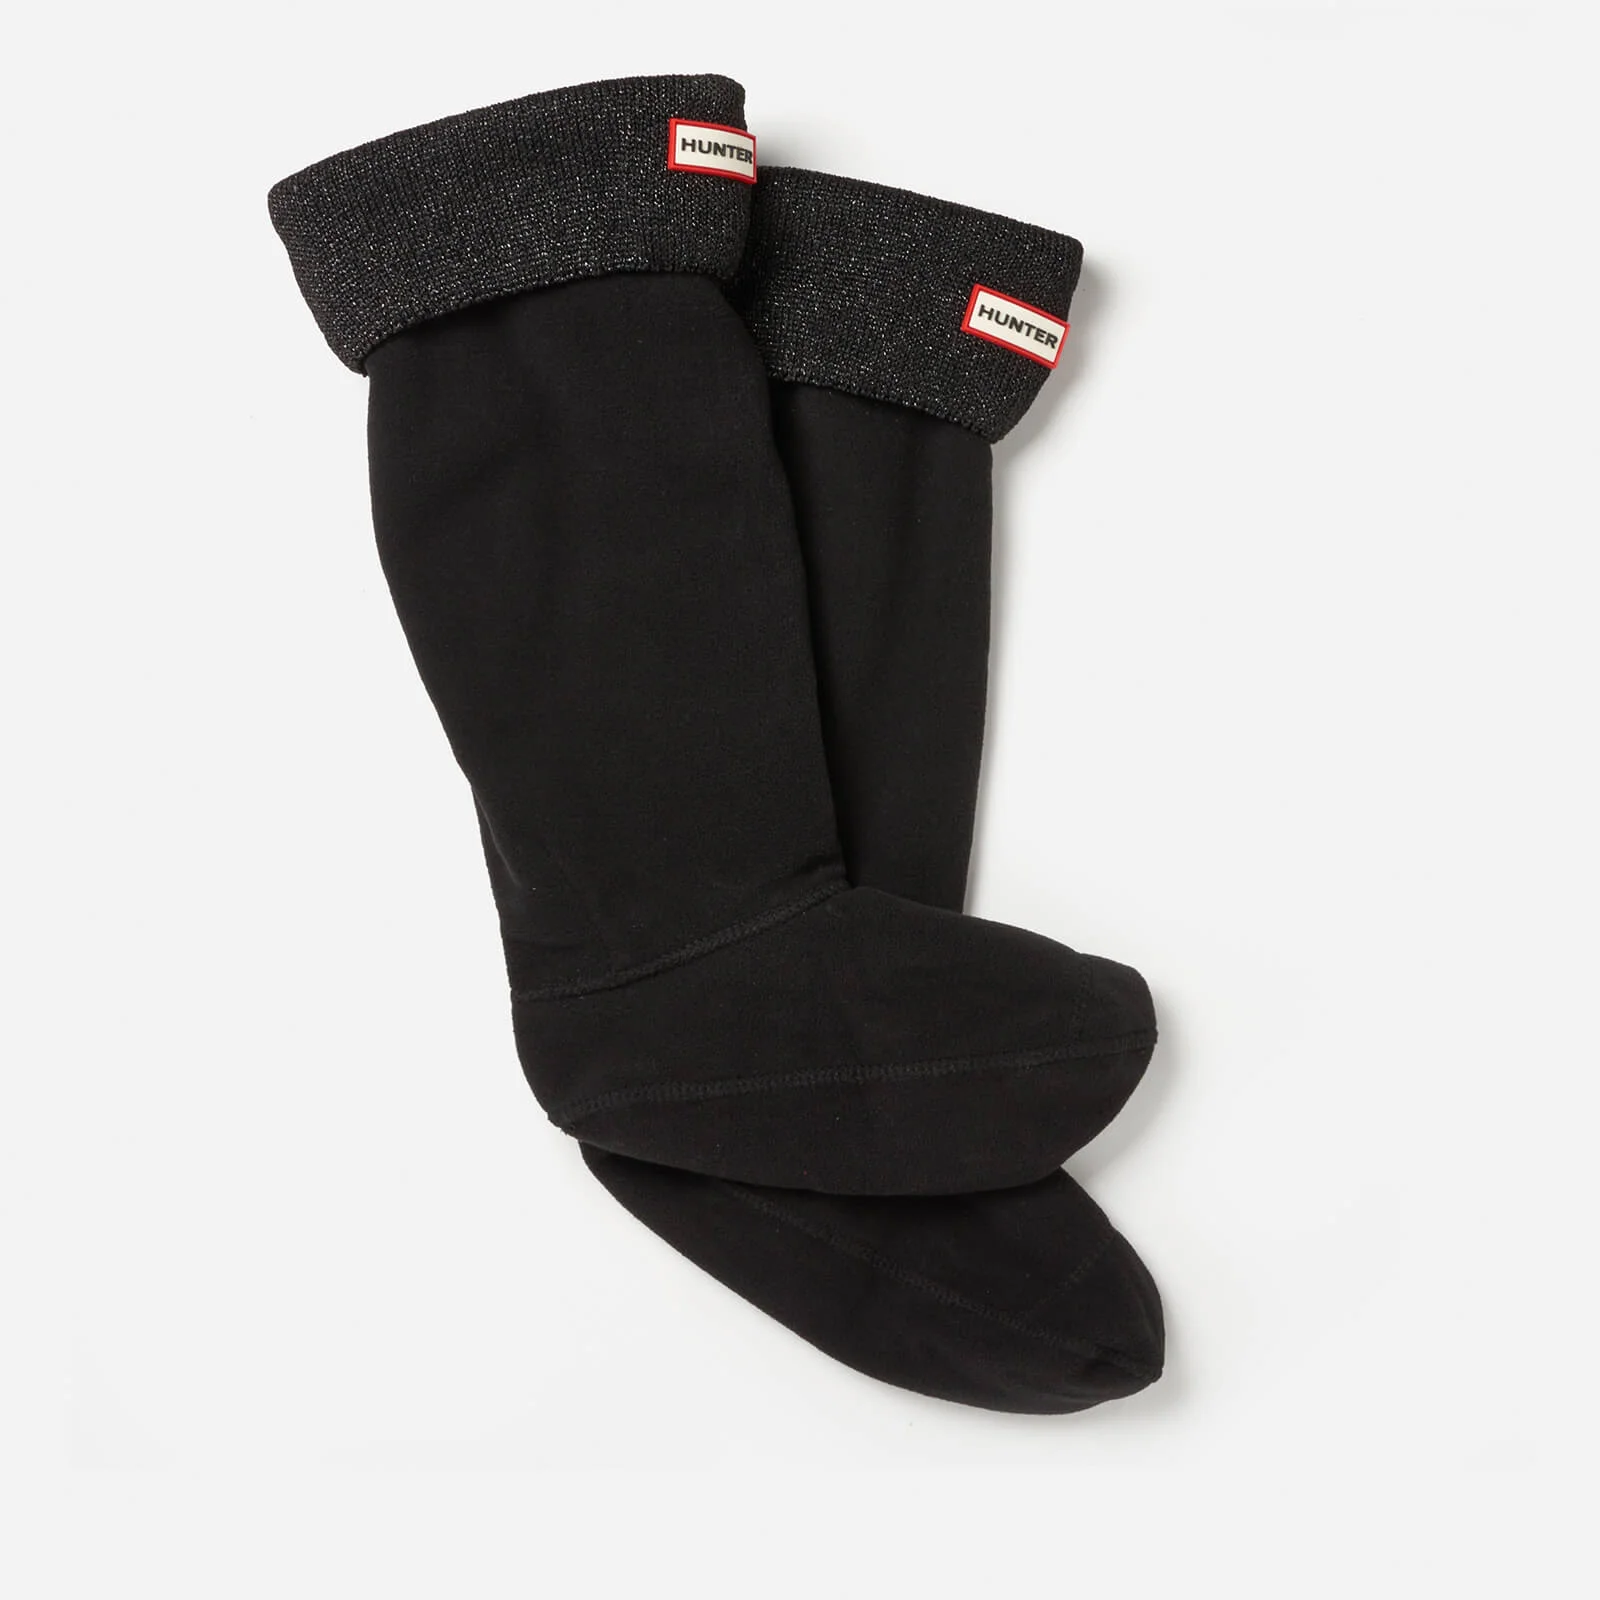 Hunter Original Tall Boot Socks with Glitter Cuff - Black Image 1